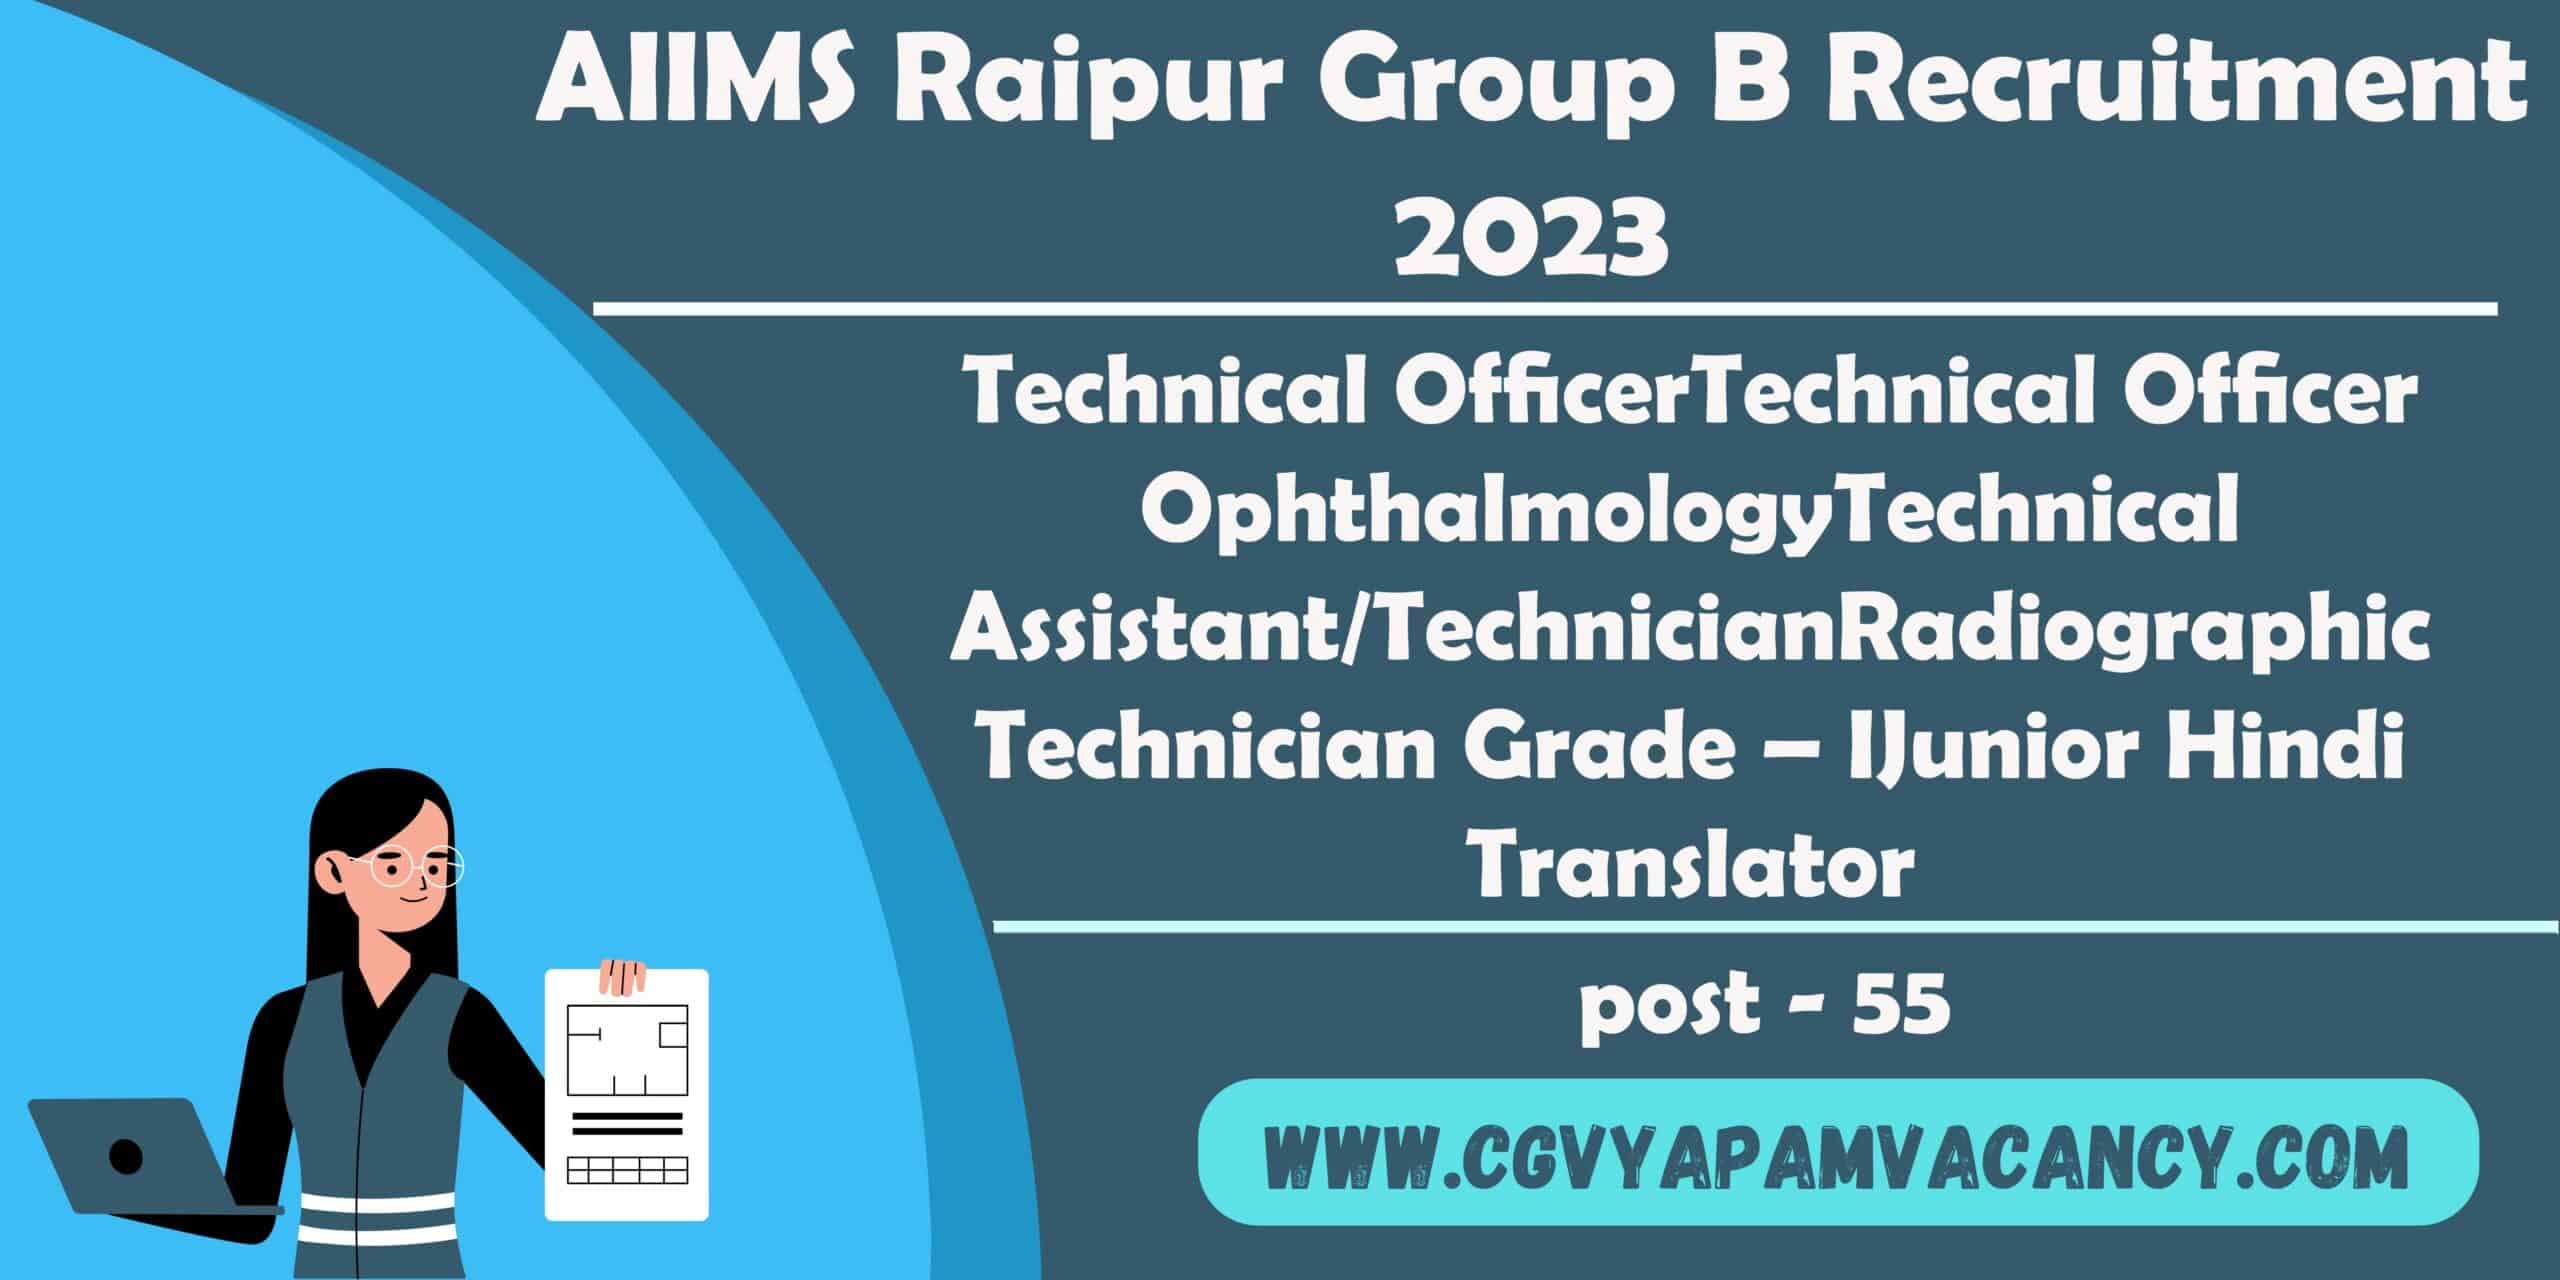 AIIMS Raipur Group B Recruitment 2023